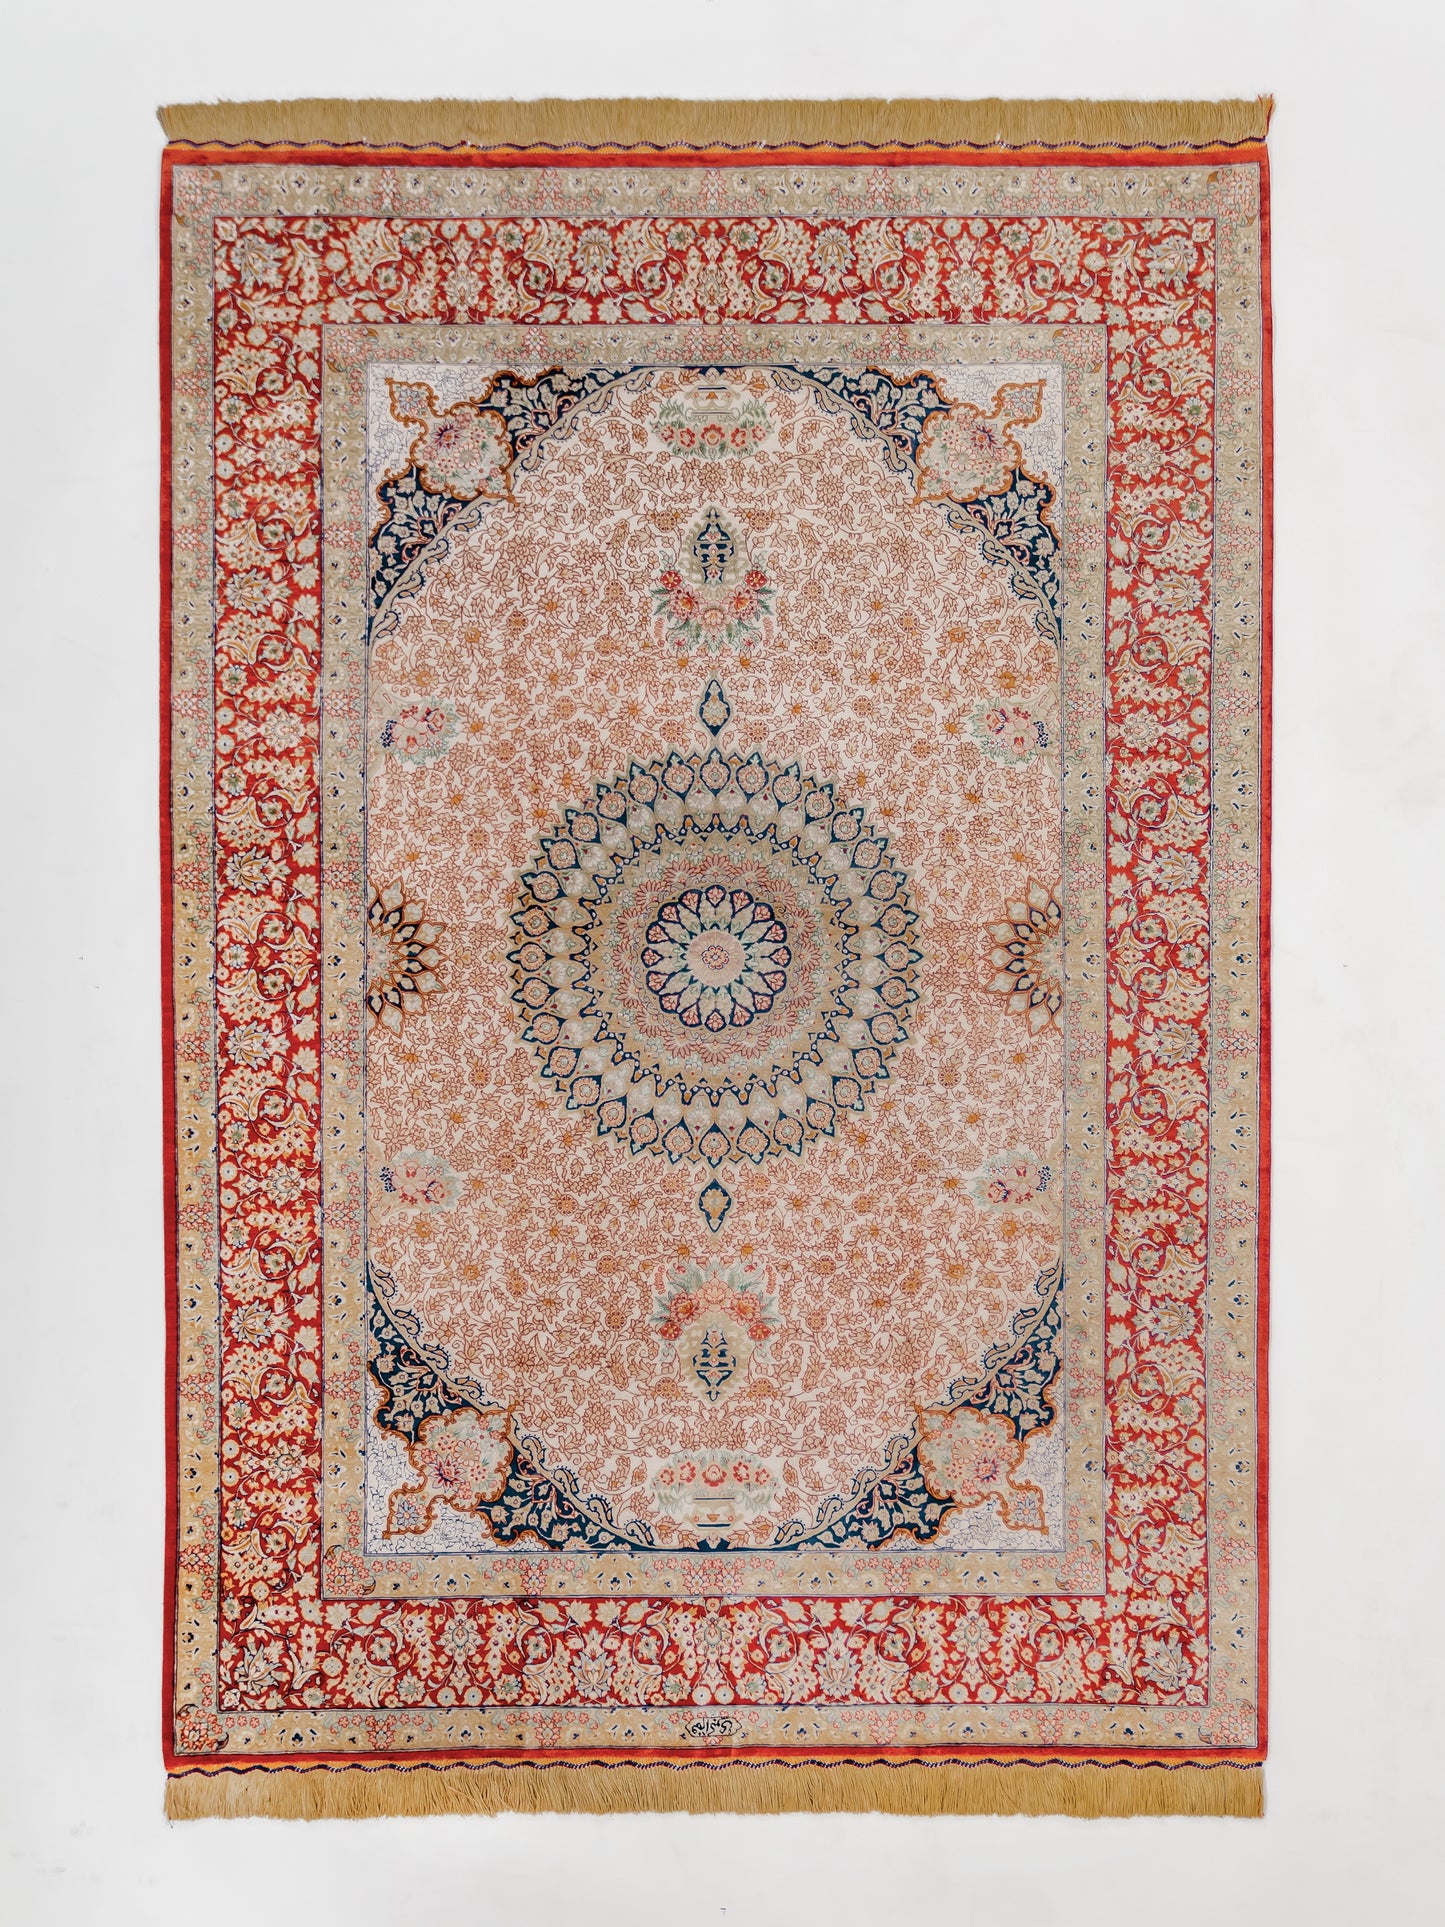 Fine Antique Persian Qom product image #29957407473834